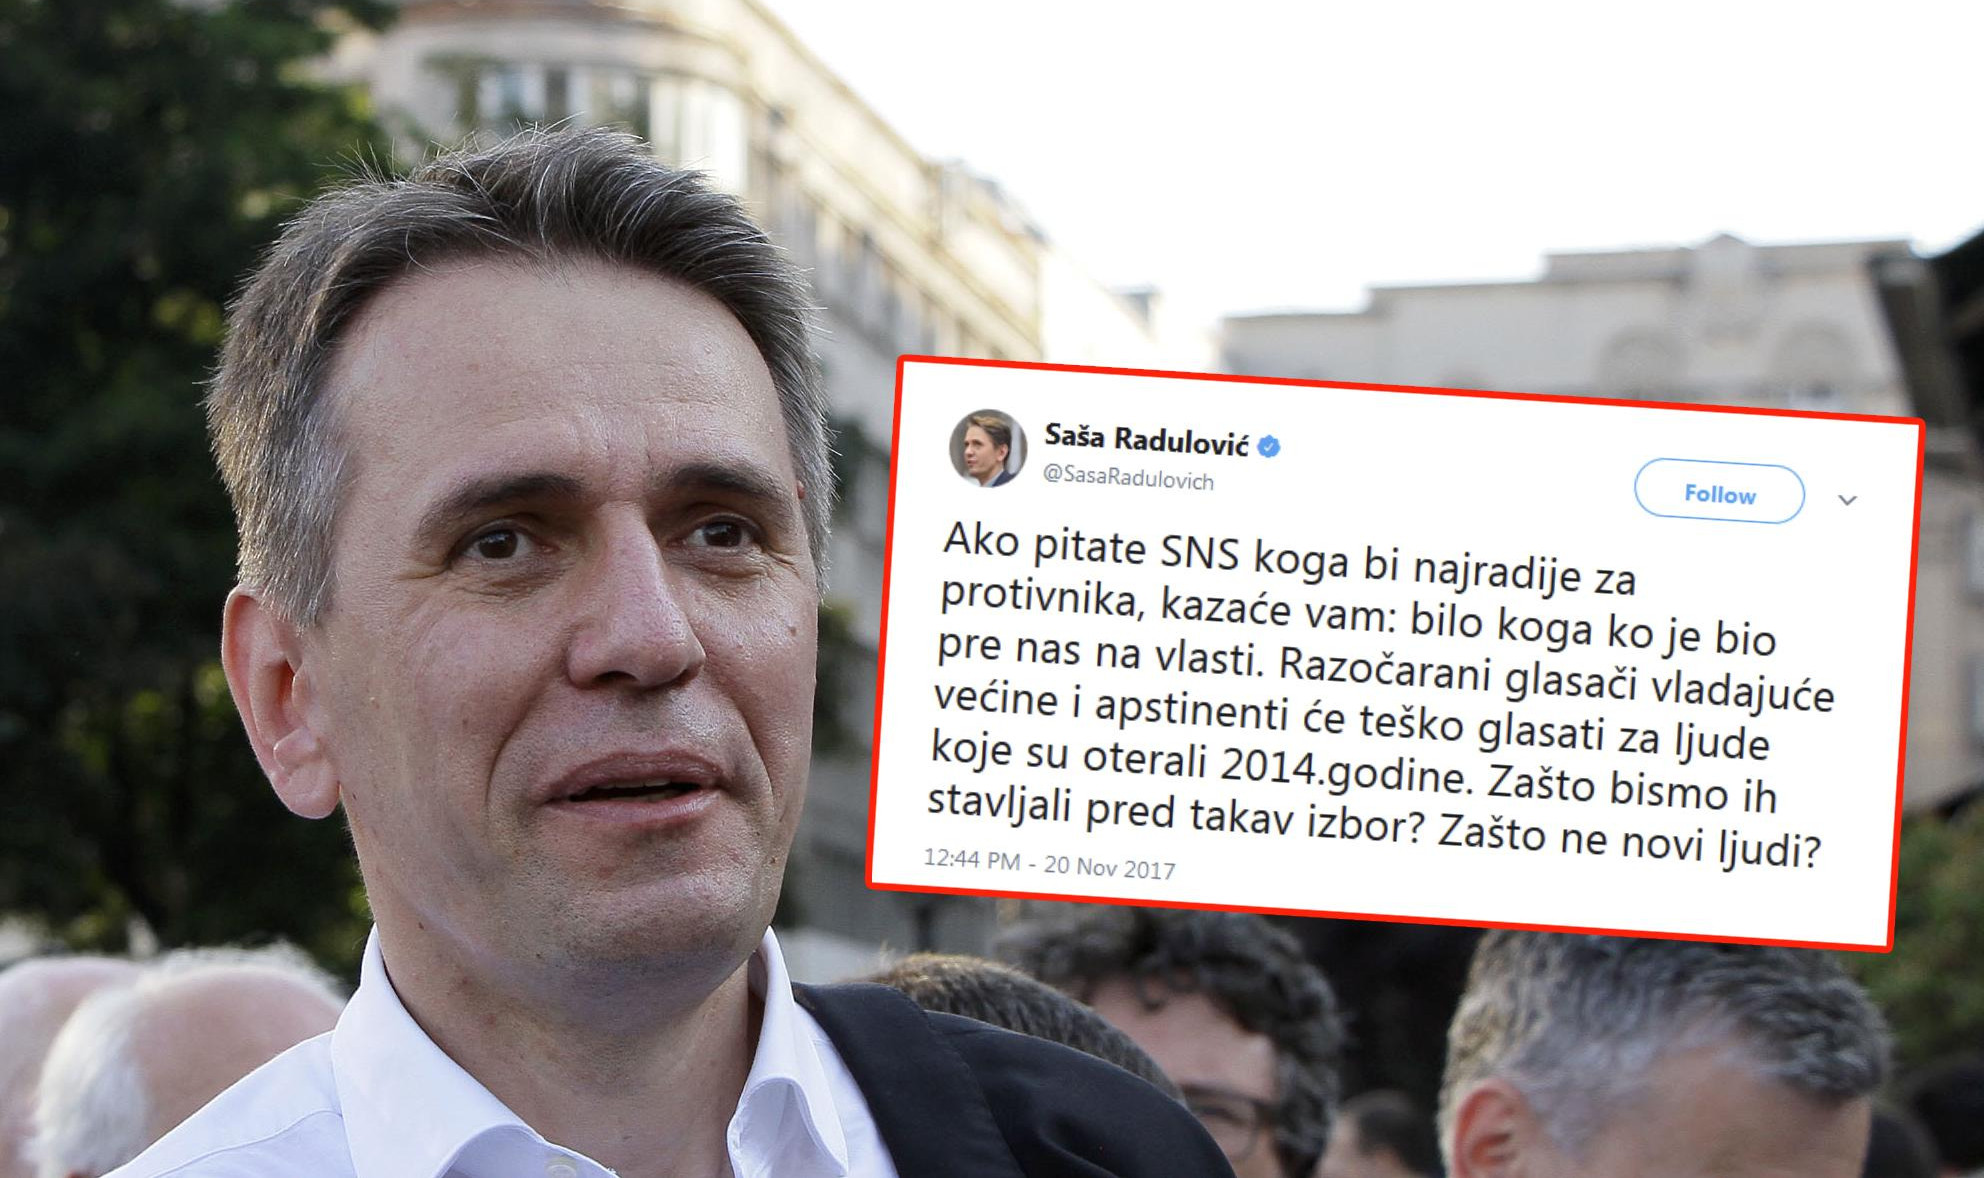 SMEHOTRESNA OPOZICIJA! Radulović poziva građane da ne glasaju za Đilasa i Tadića - NUDI SEBE KAO REŠENJE!